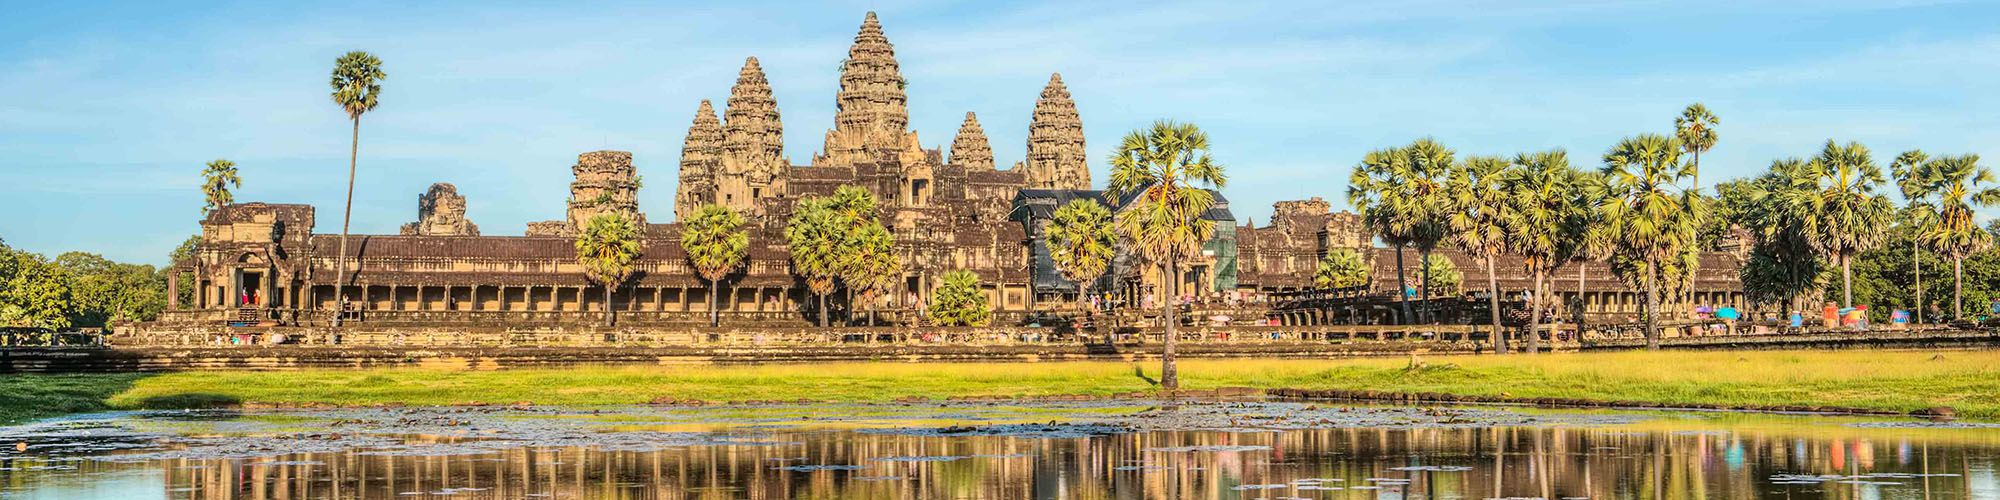 Cambodia, Angkor Wat, Temples